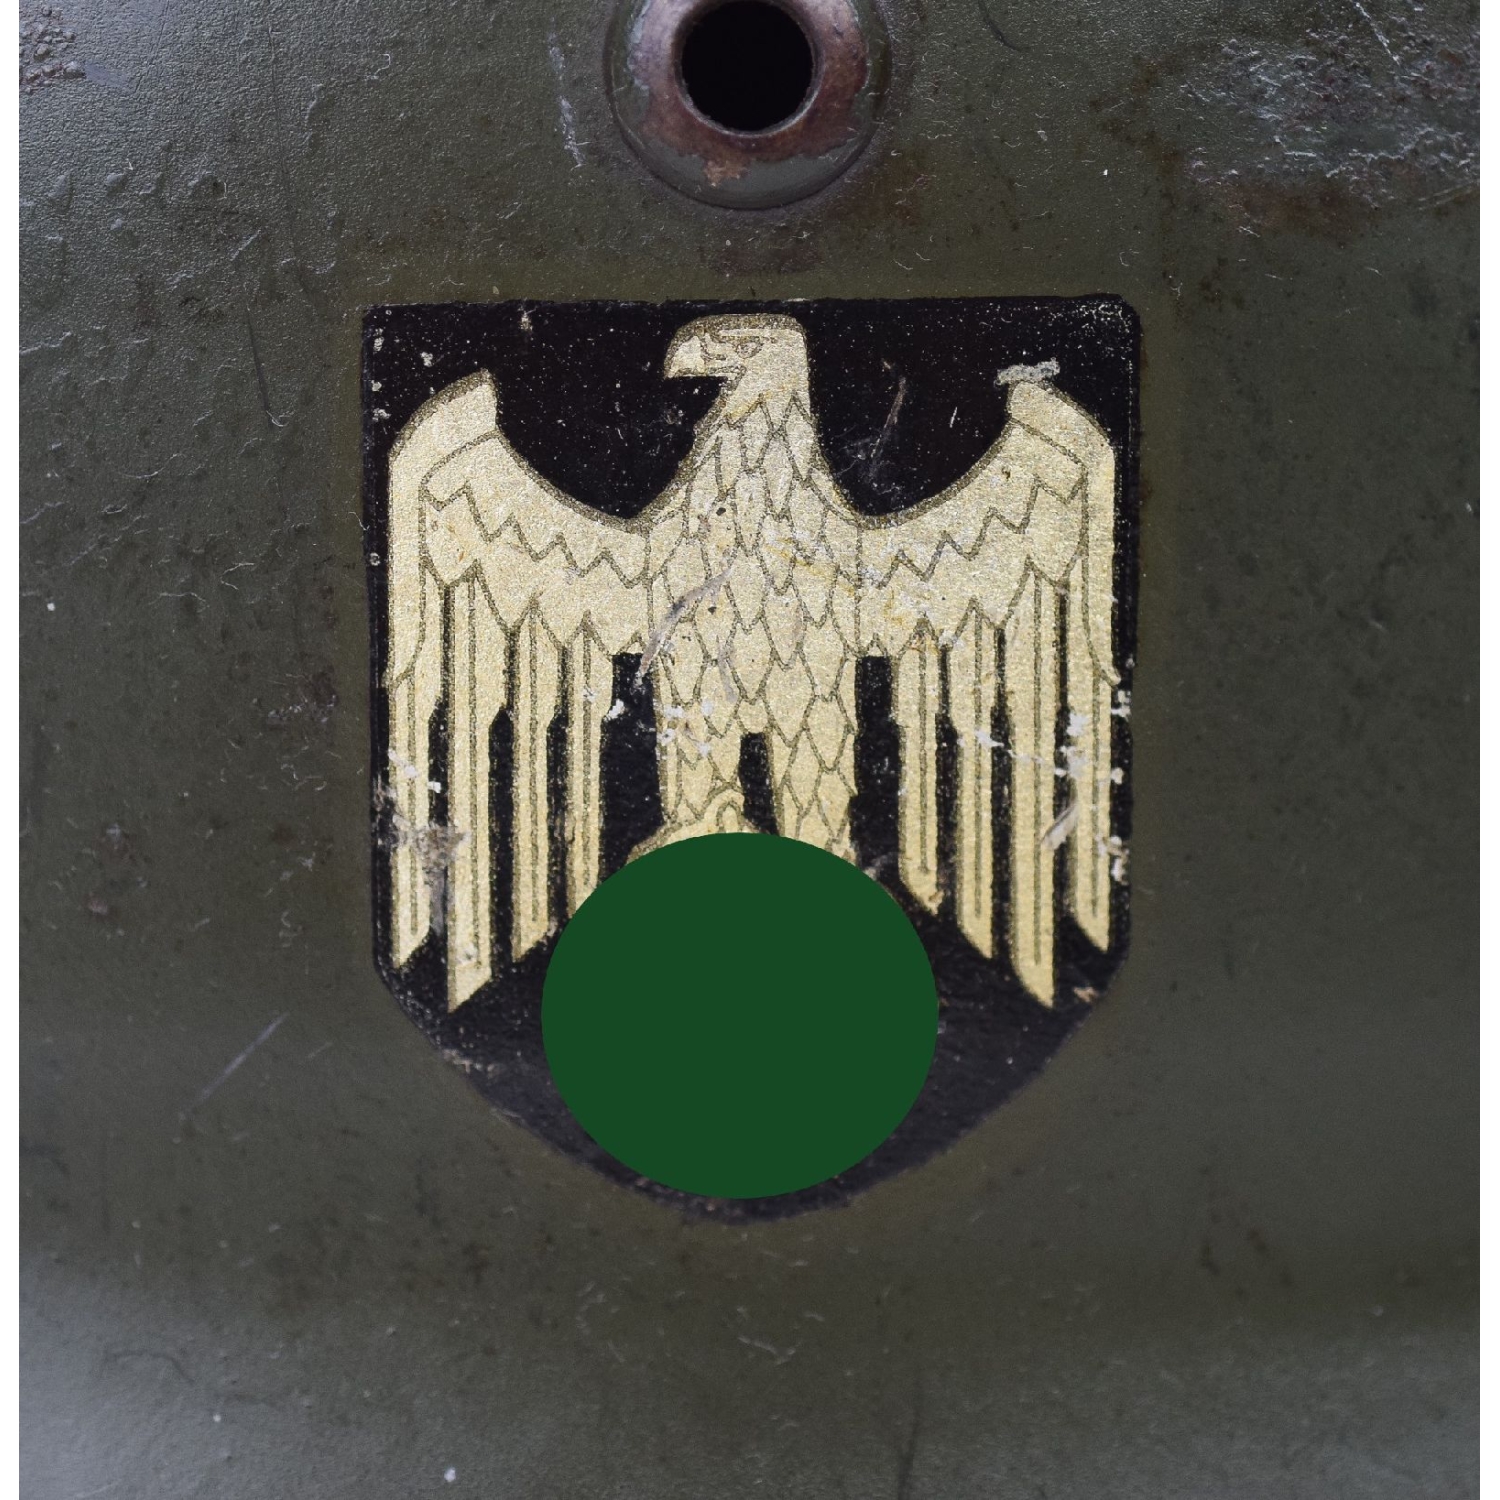 M35 Stahlhelm Q66 der Wehrmacht Doppelemblemer in Apfelgrün